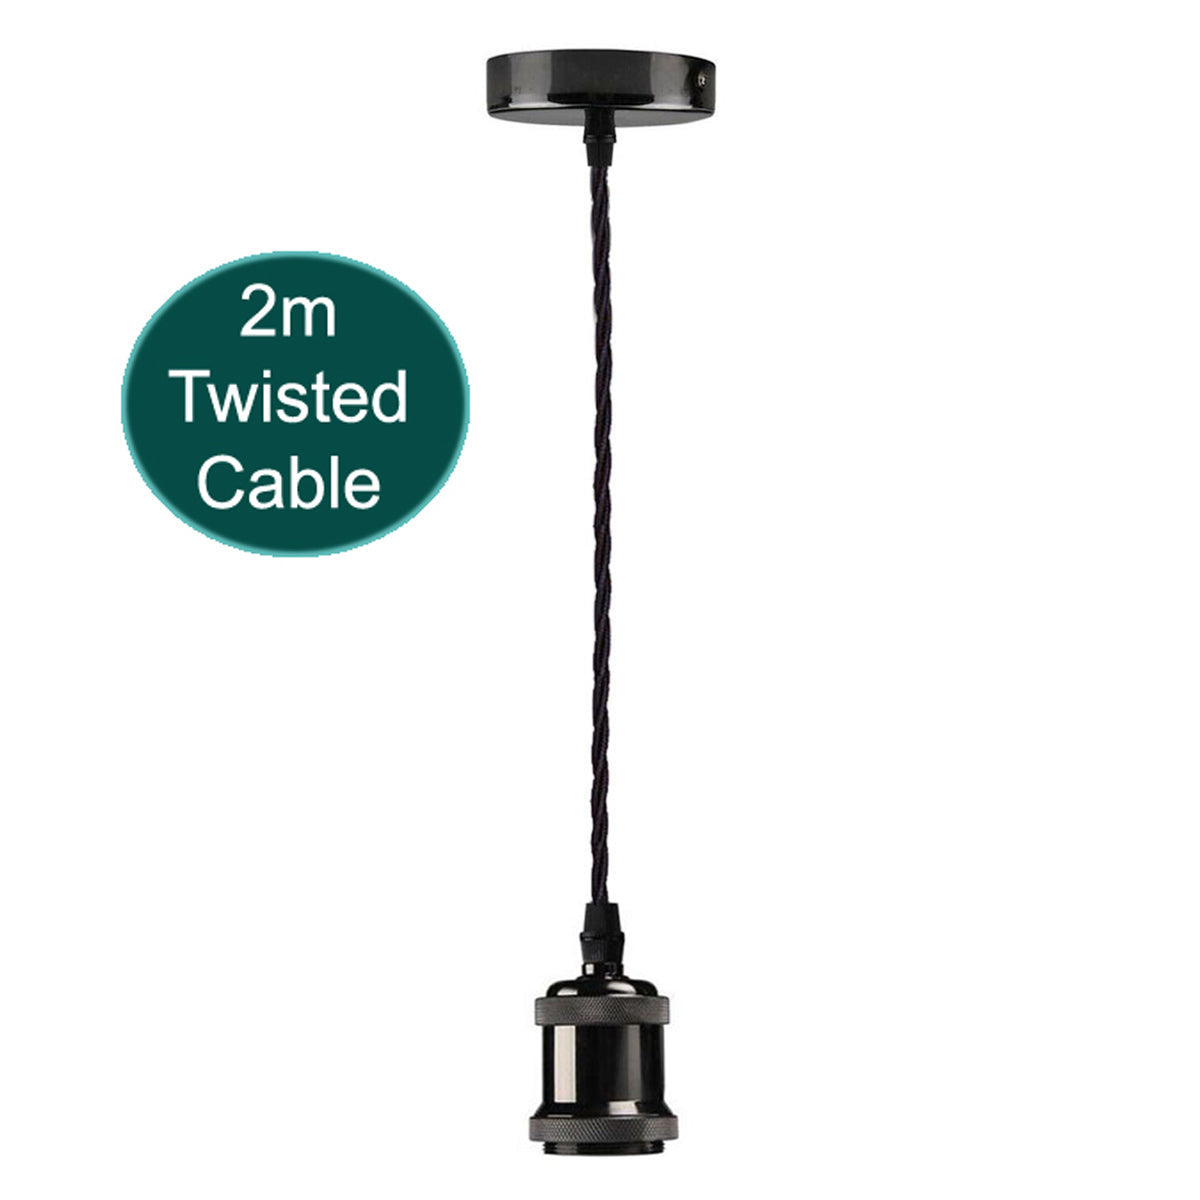 2m Black Twisted Cable Pendant E27 Base Shiny Black Holder~1729 - electricalsone UK Ltd